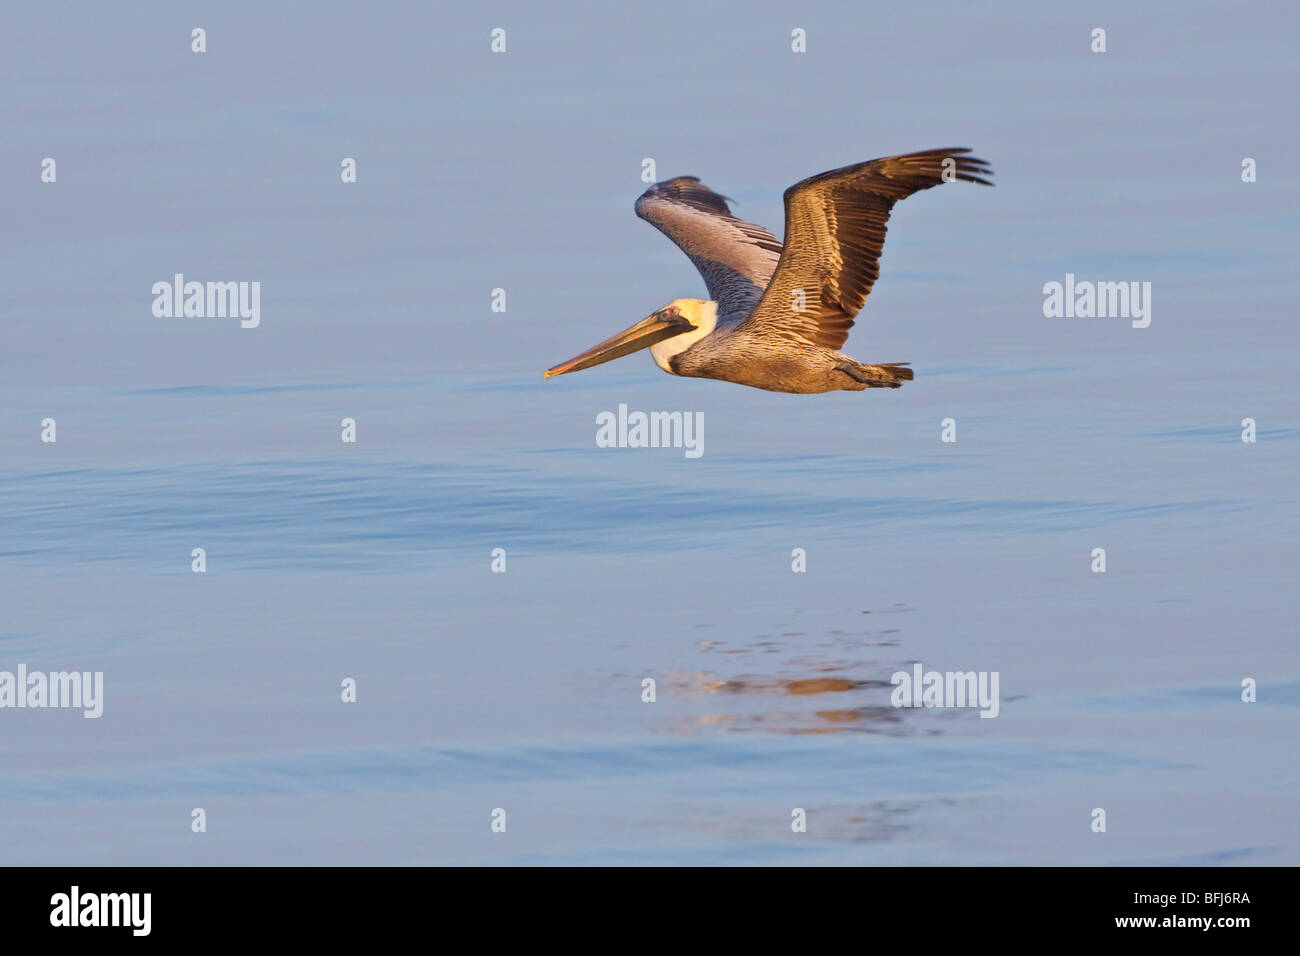 Pellicano marrone (Pelecanus occidentalis) alla ricerca di cibo durante il volo al largo delle coste del Ecuador. Foto Stock